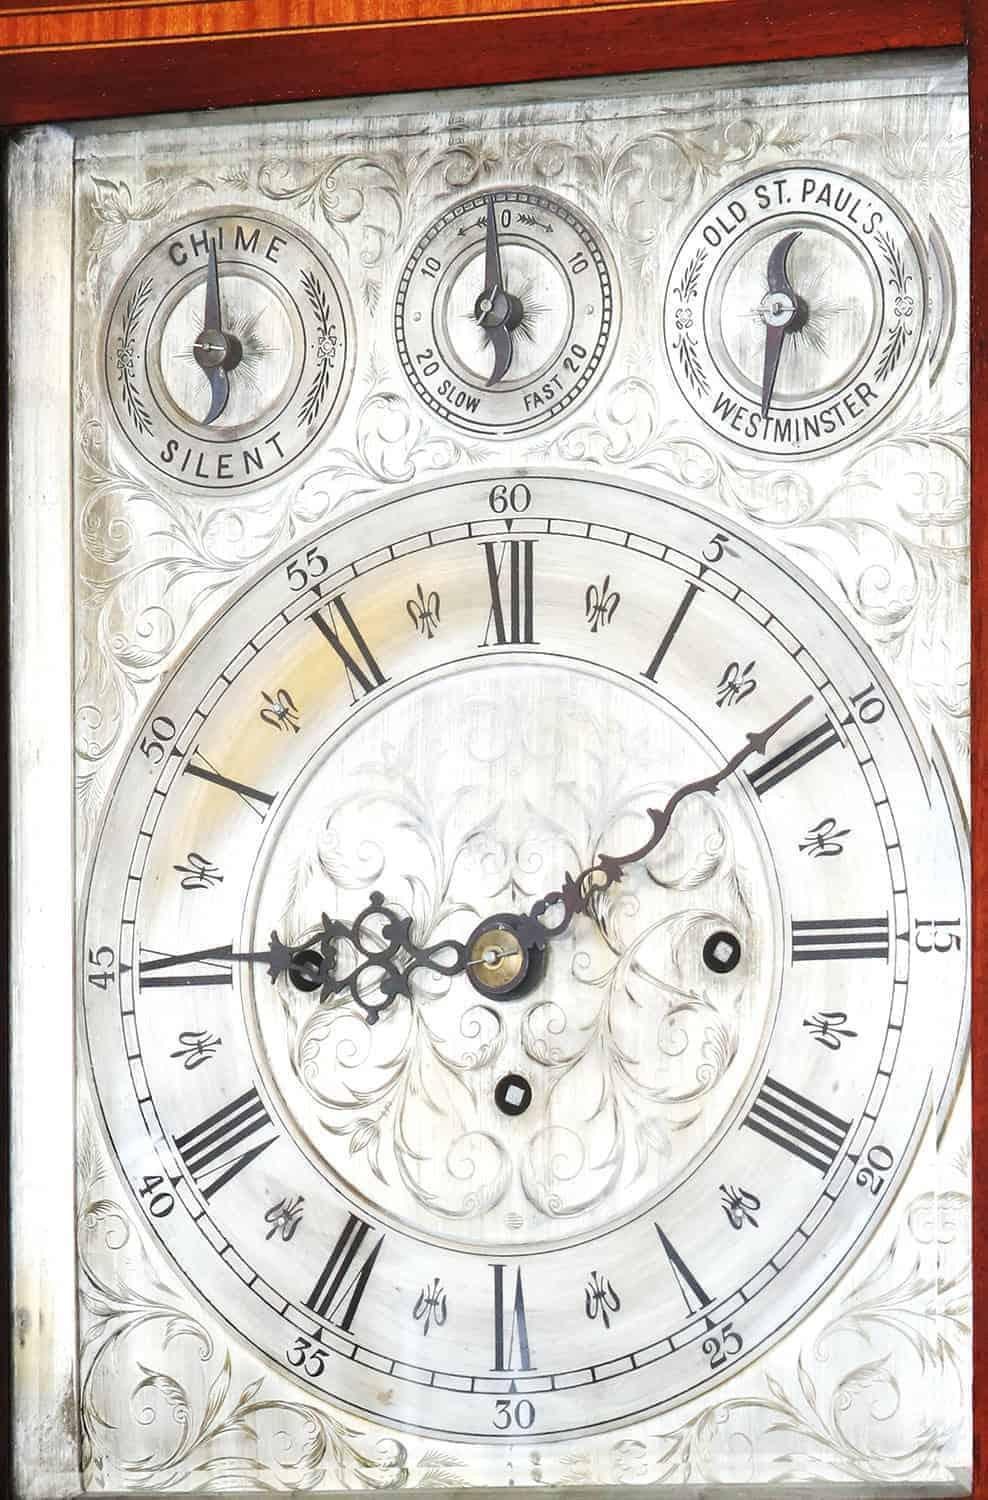 Horloge à bras vers 1880 jouant sur 2 airs Westminster et vieux St. Paul's jouant sur des gongs

Mesures : Largeur 42cm
Hauteur 90cm avec support
Profondeur 30cm (sous réserve de confirmation).